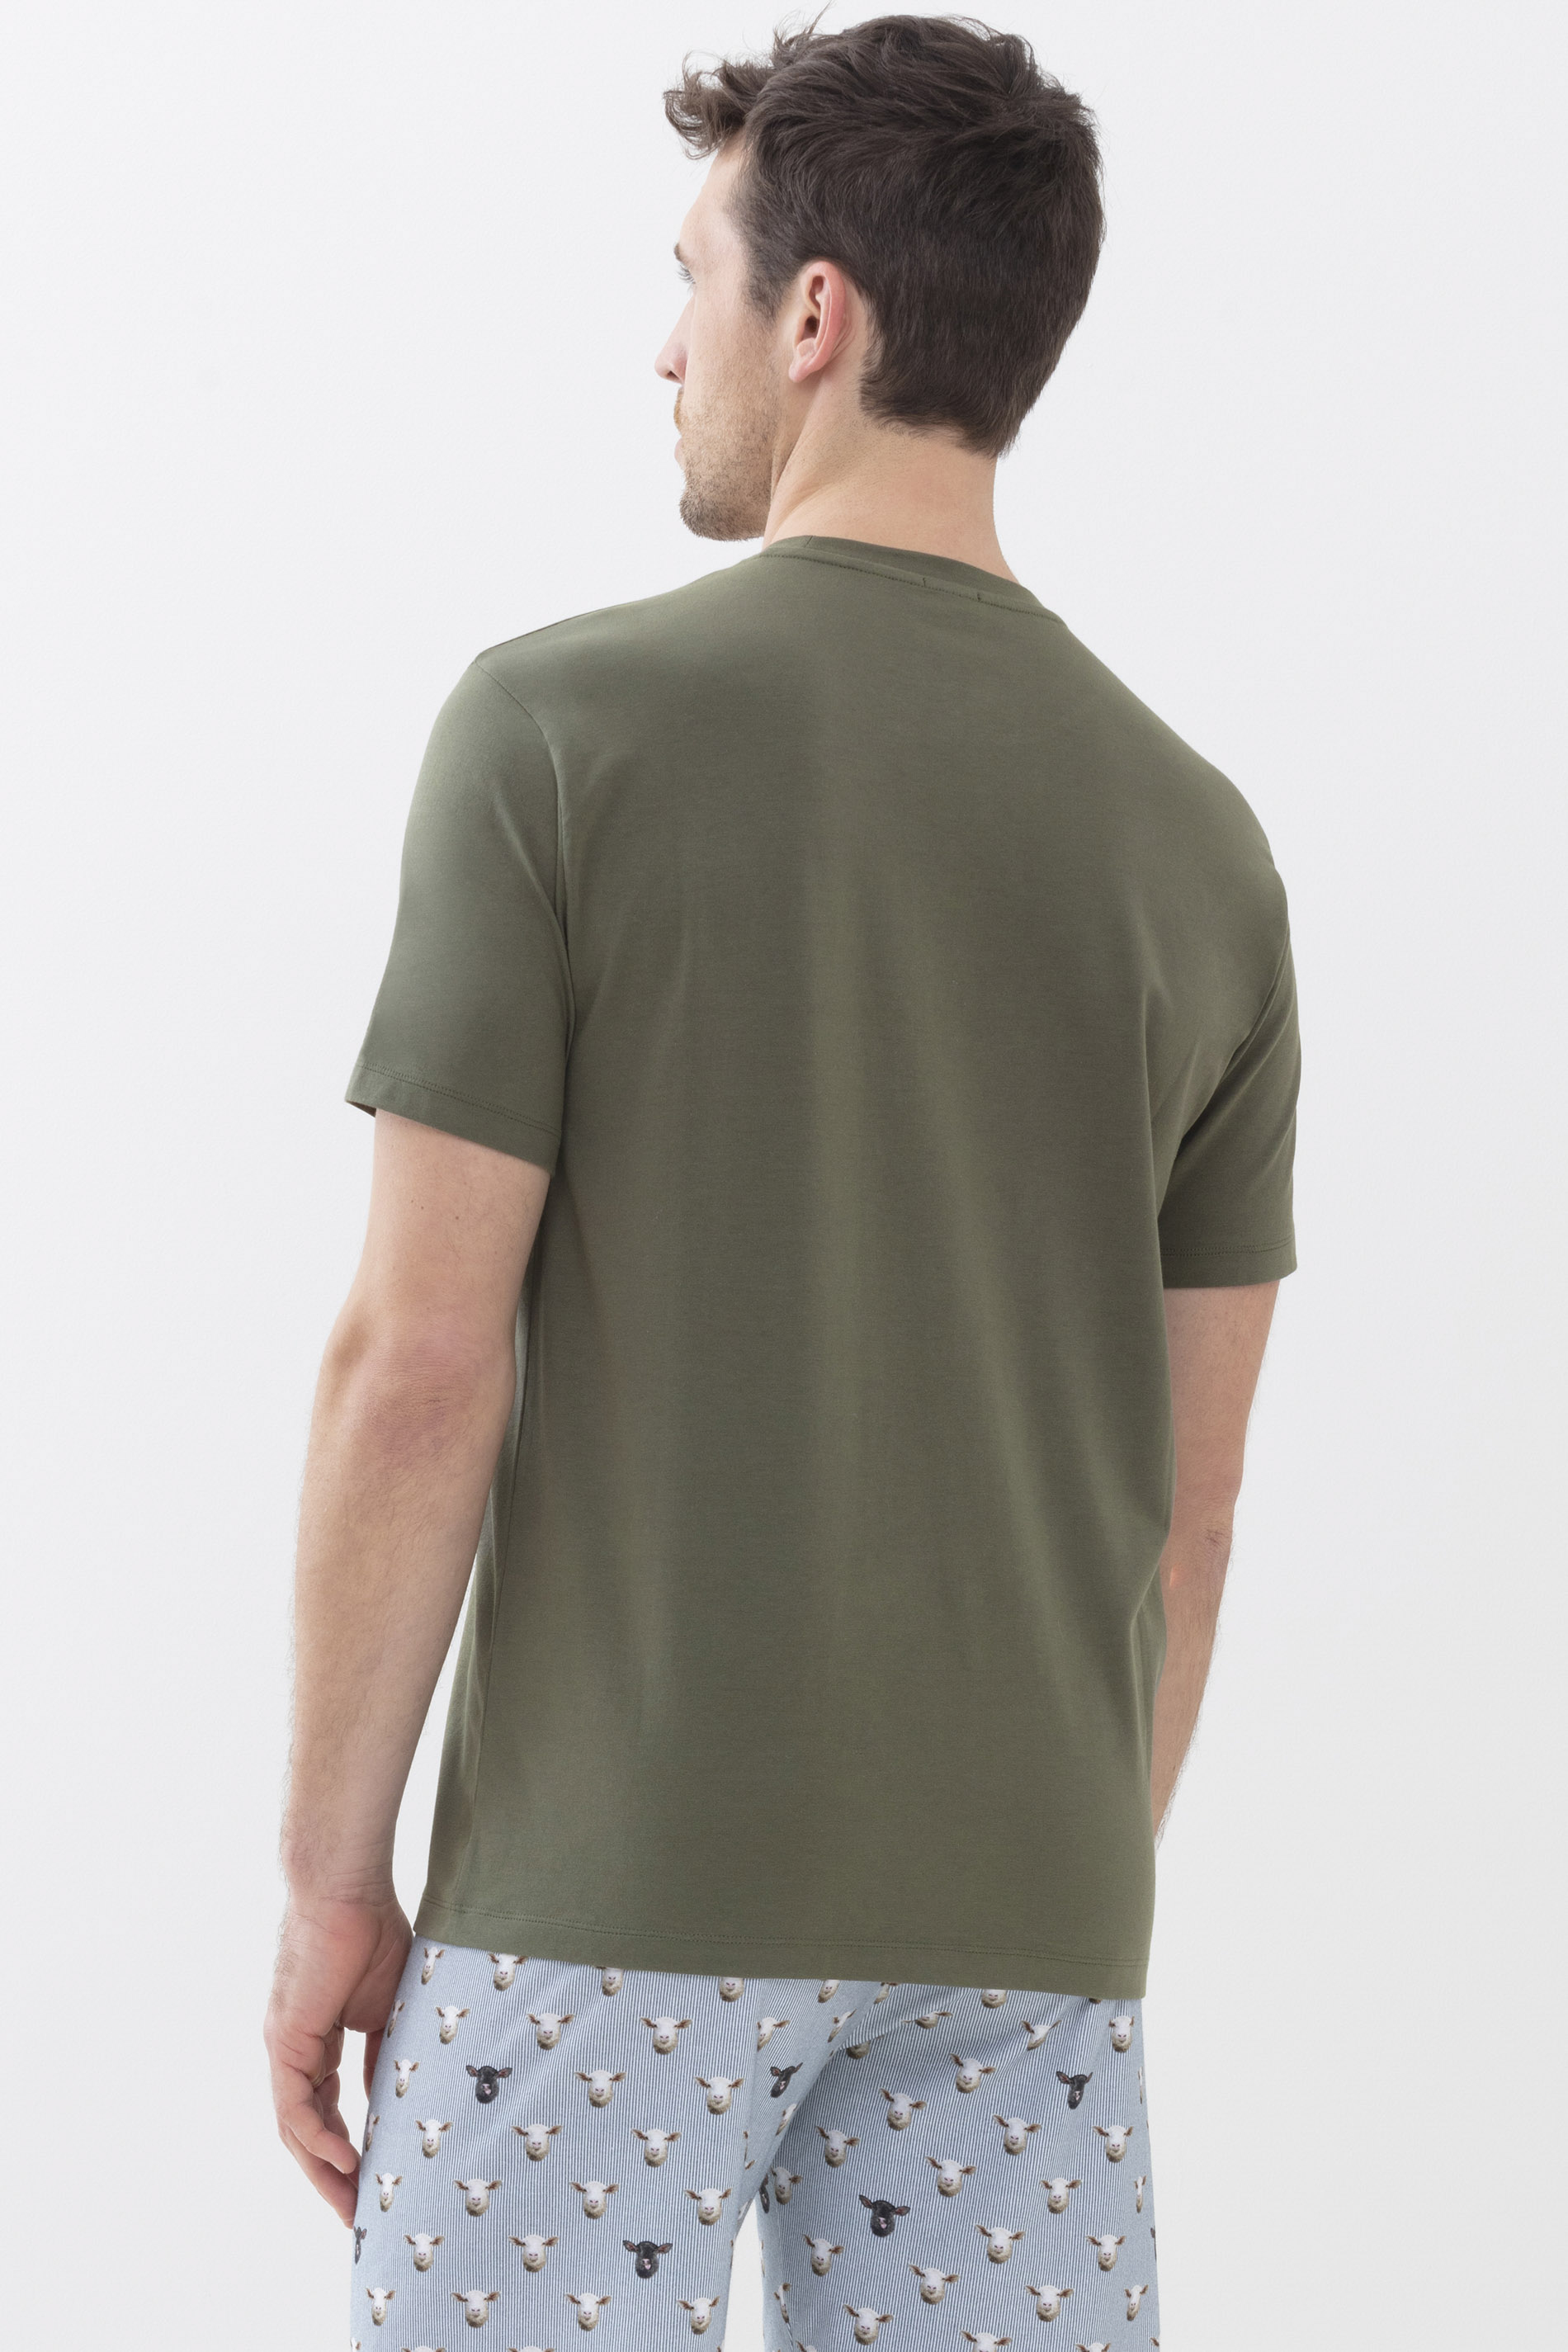 T-shirt Khaki Serie RE:THINK BLACK Rear View | mey®